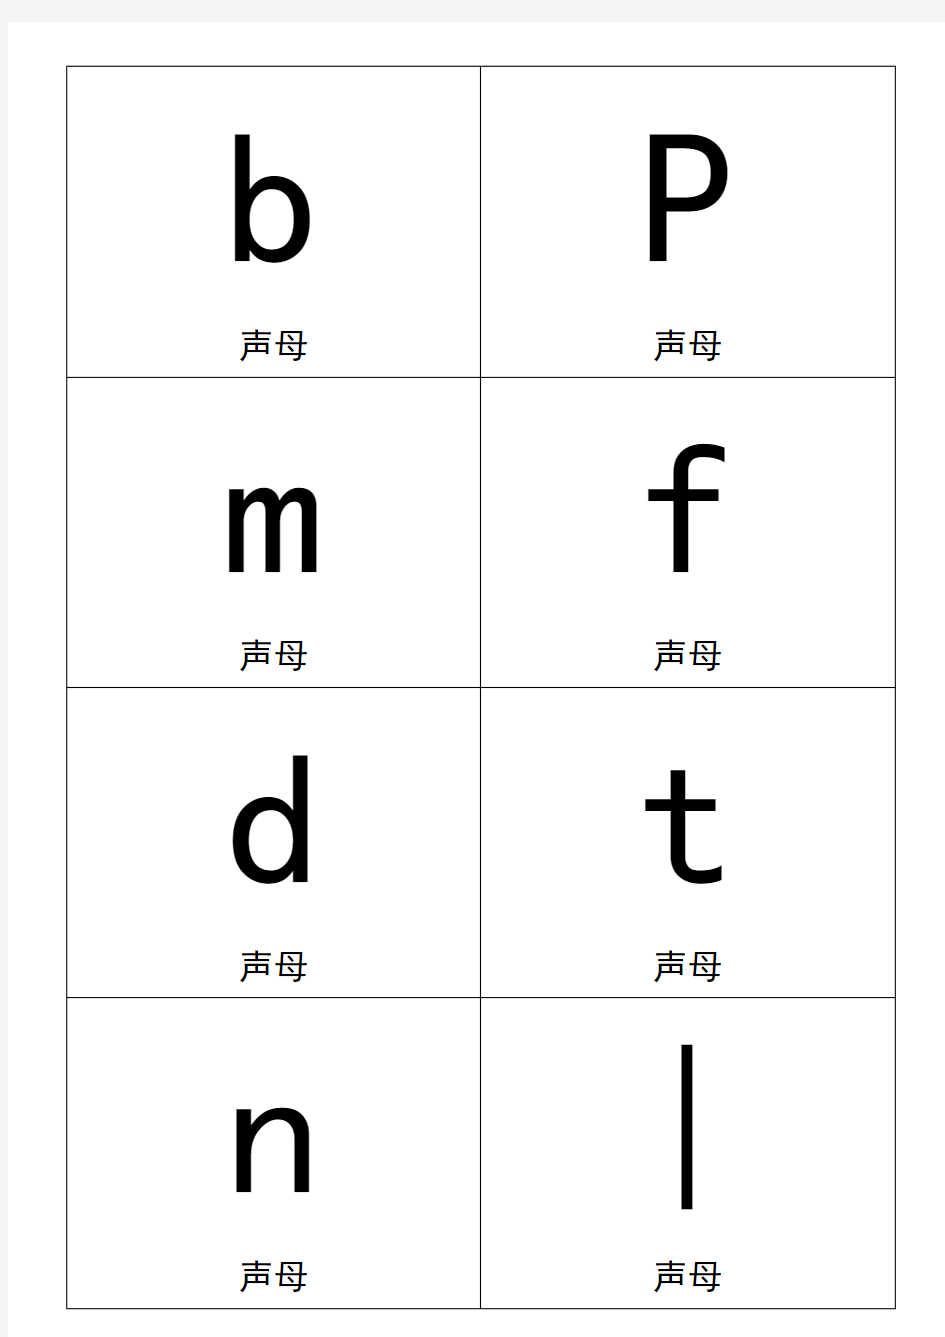 一年级汉语拼音卡片打印版(A4纸拼音卡片)